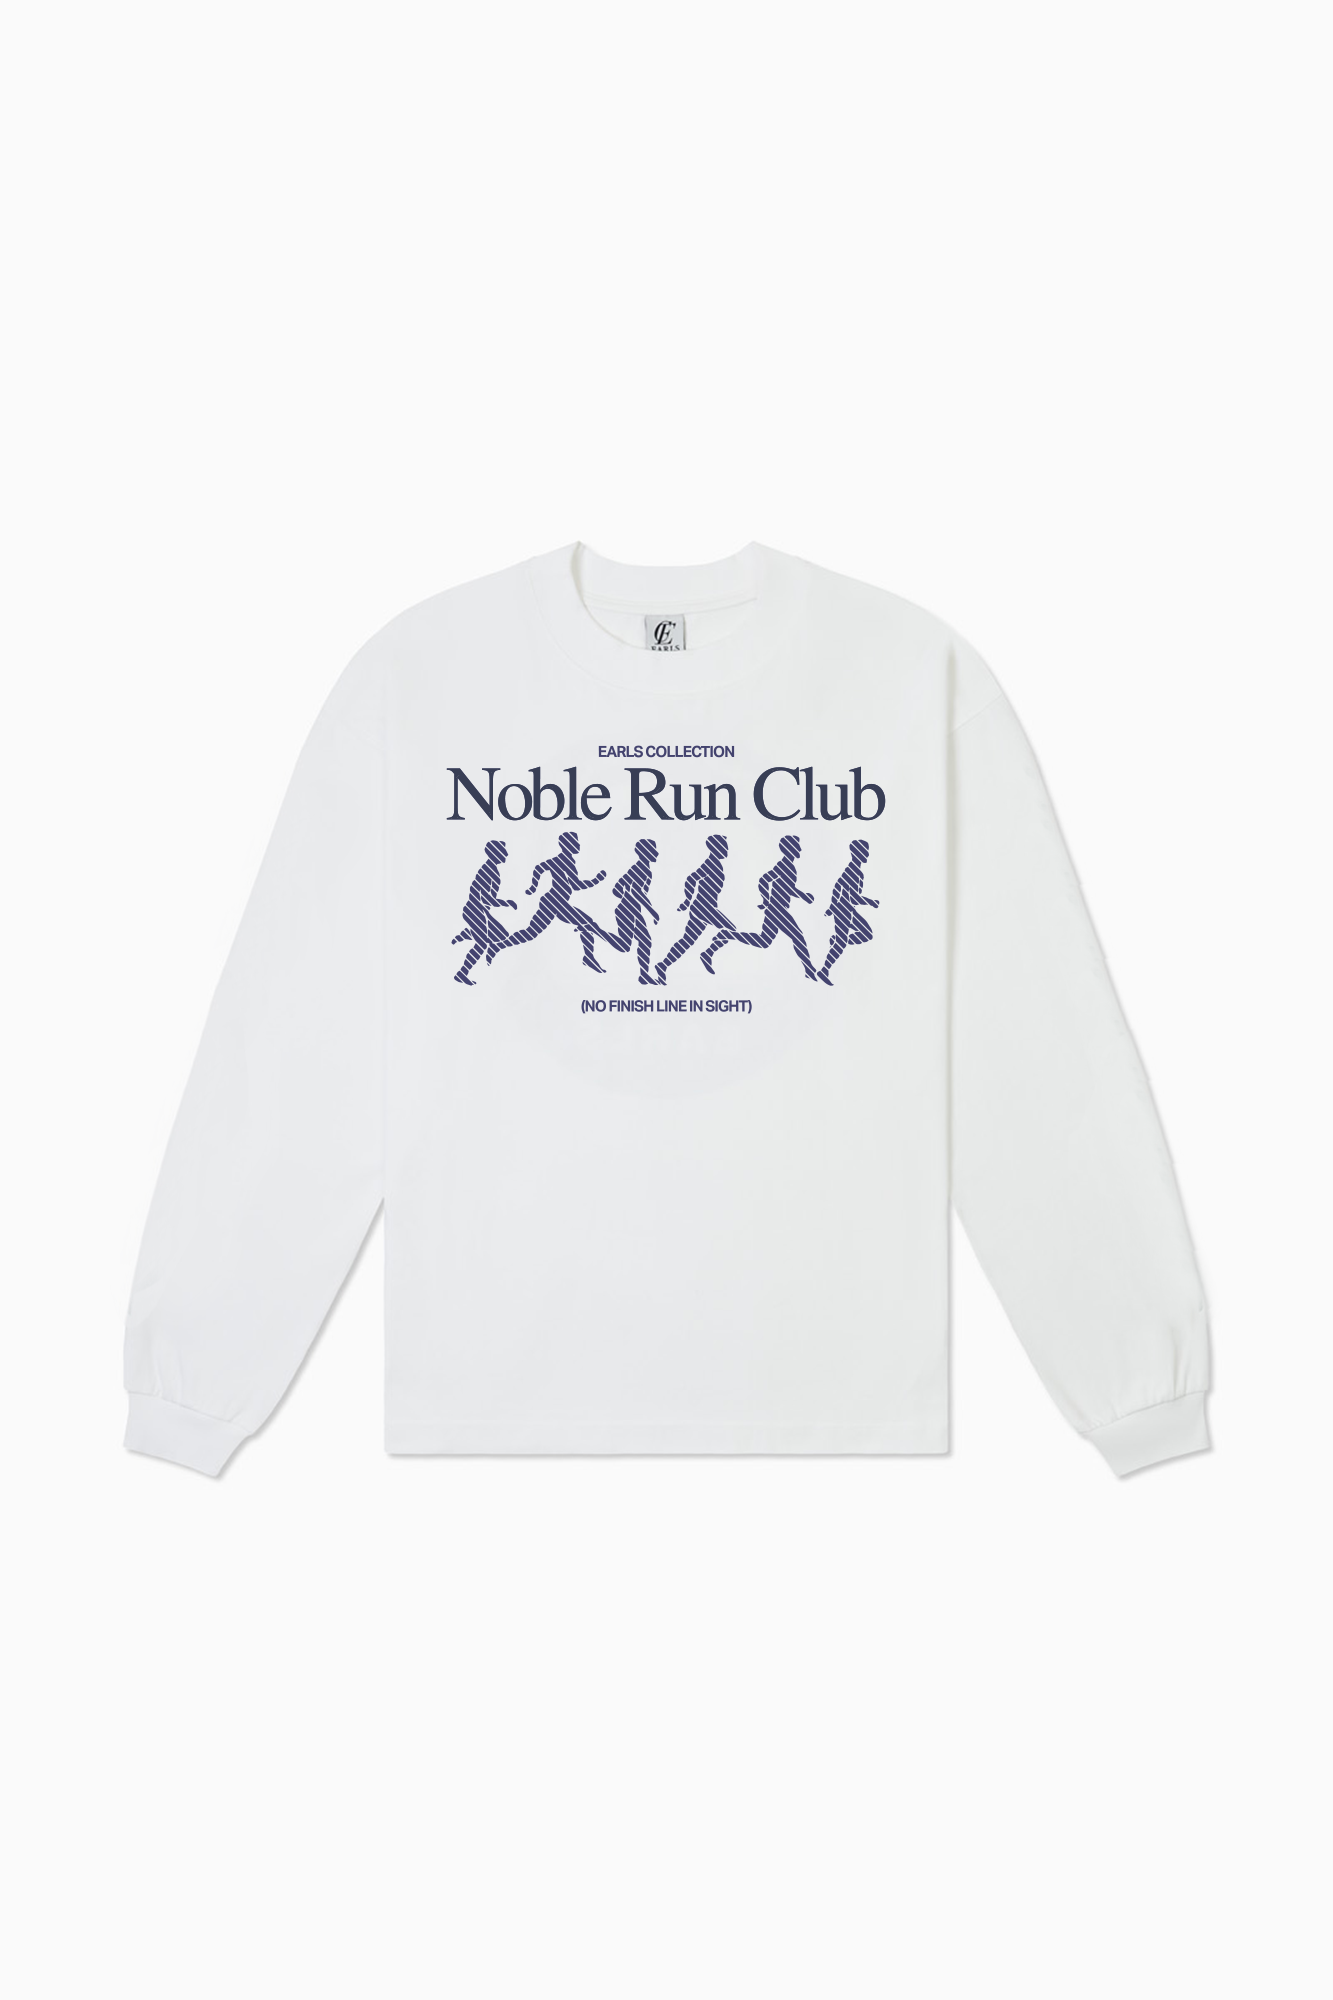 Run Club Long Sleeve Tee - White